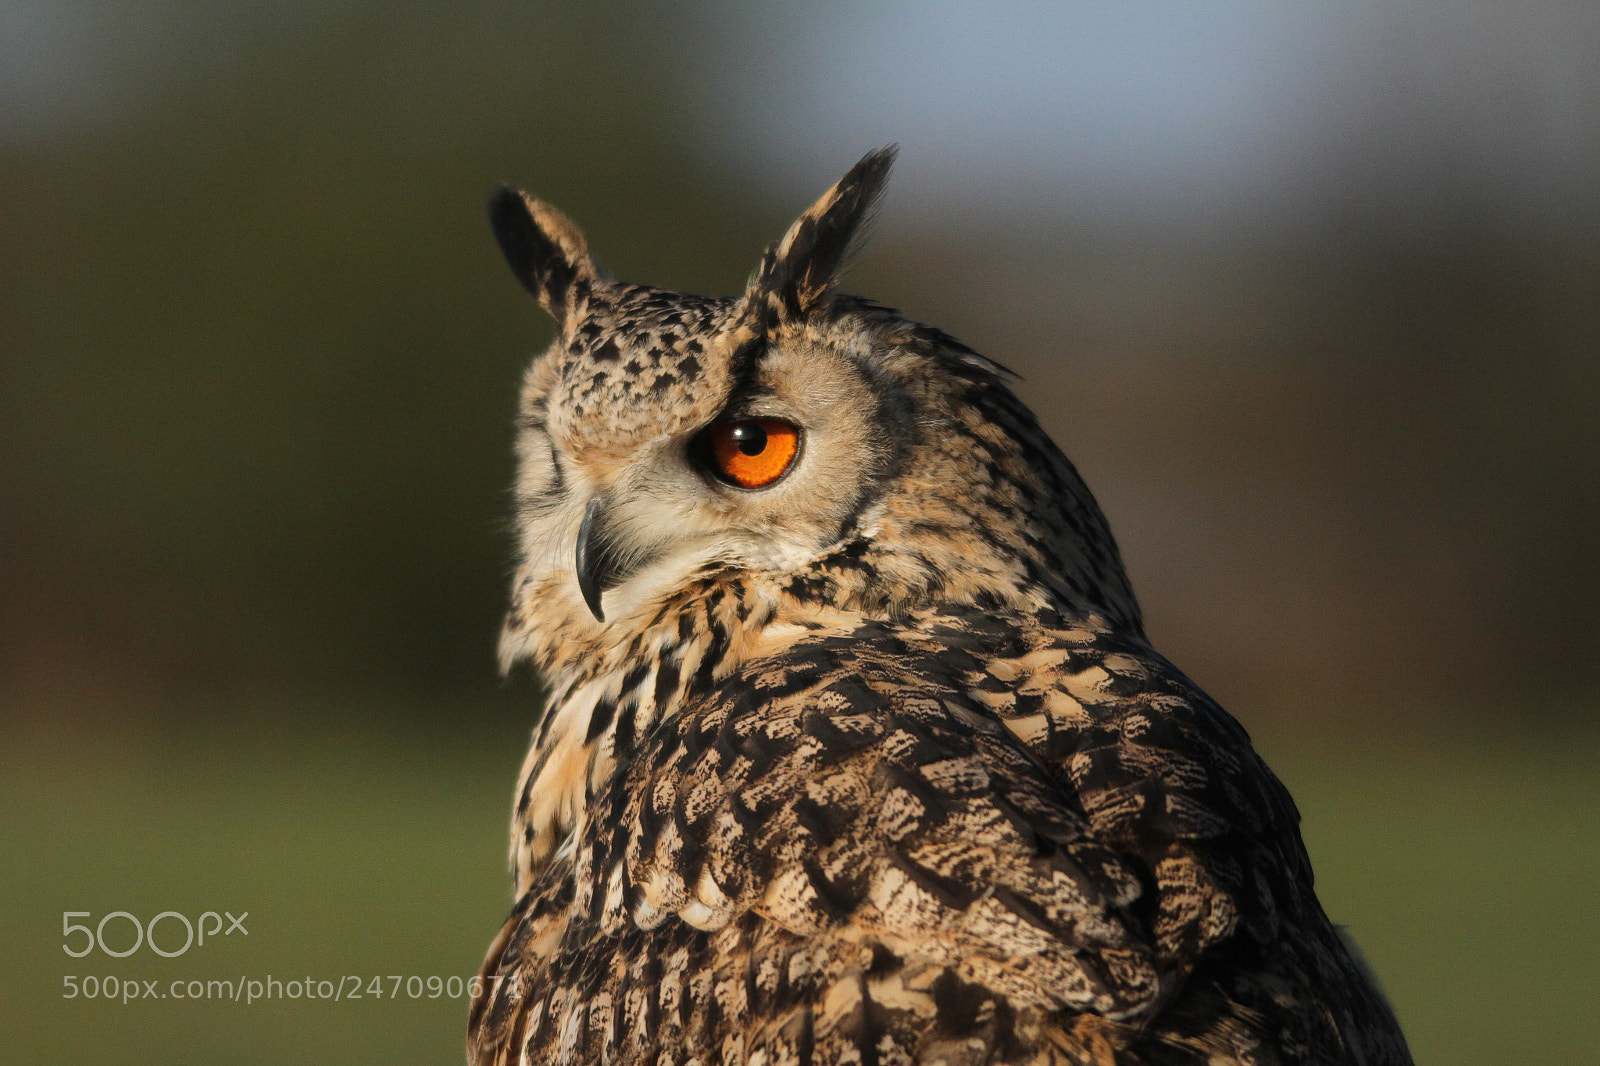 Canon EOS 7D sample photo. European eagle owl photography